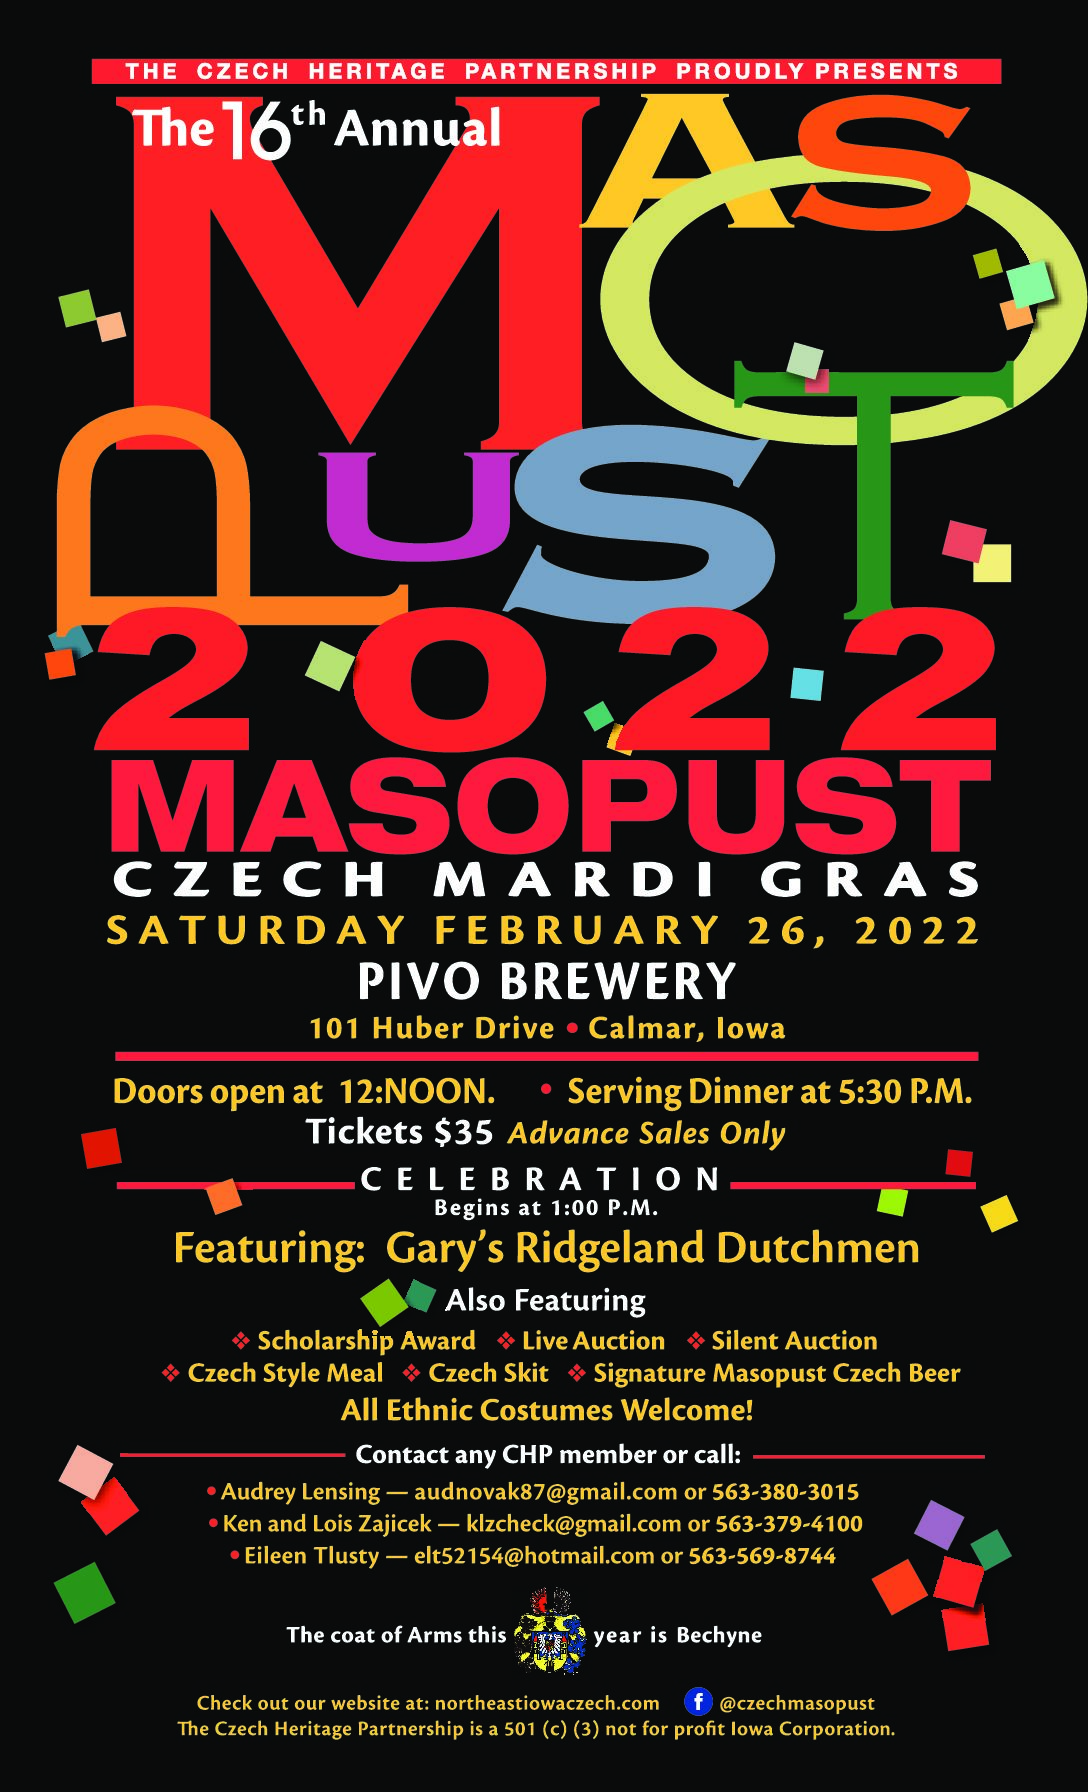 Masopust - A Czech Mardi Gras thumbnail